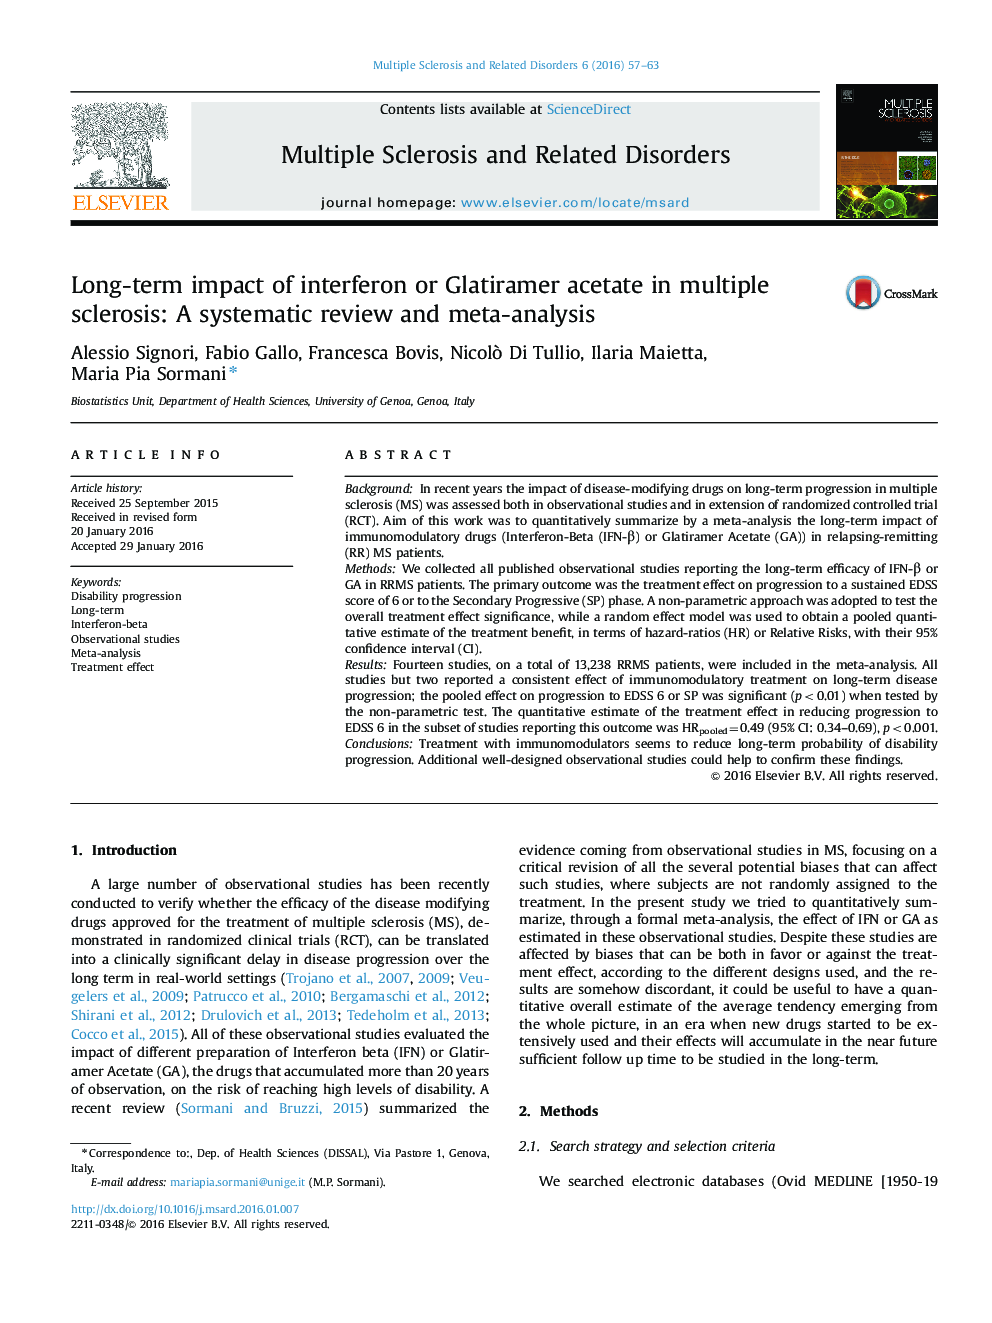 تأثیر طولانی مدت اینترفرون یا گلاتیمر استات در مولتیپل اسکلروزیس: بررسی منظم و متاآنالیز 